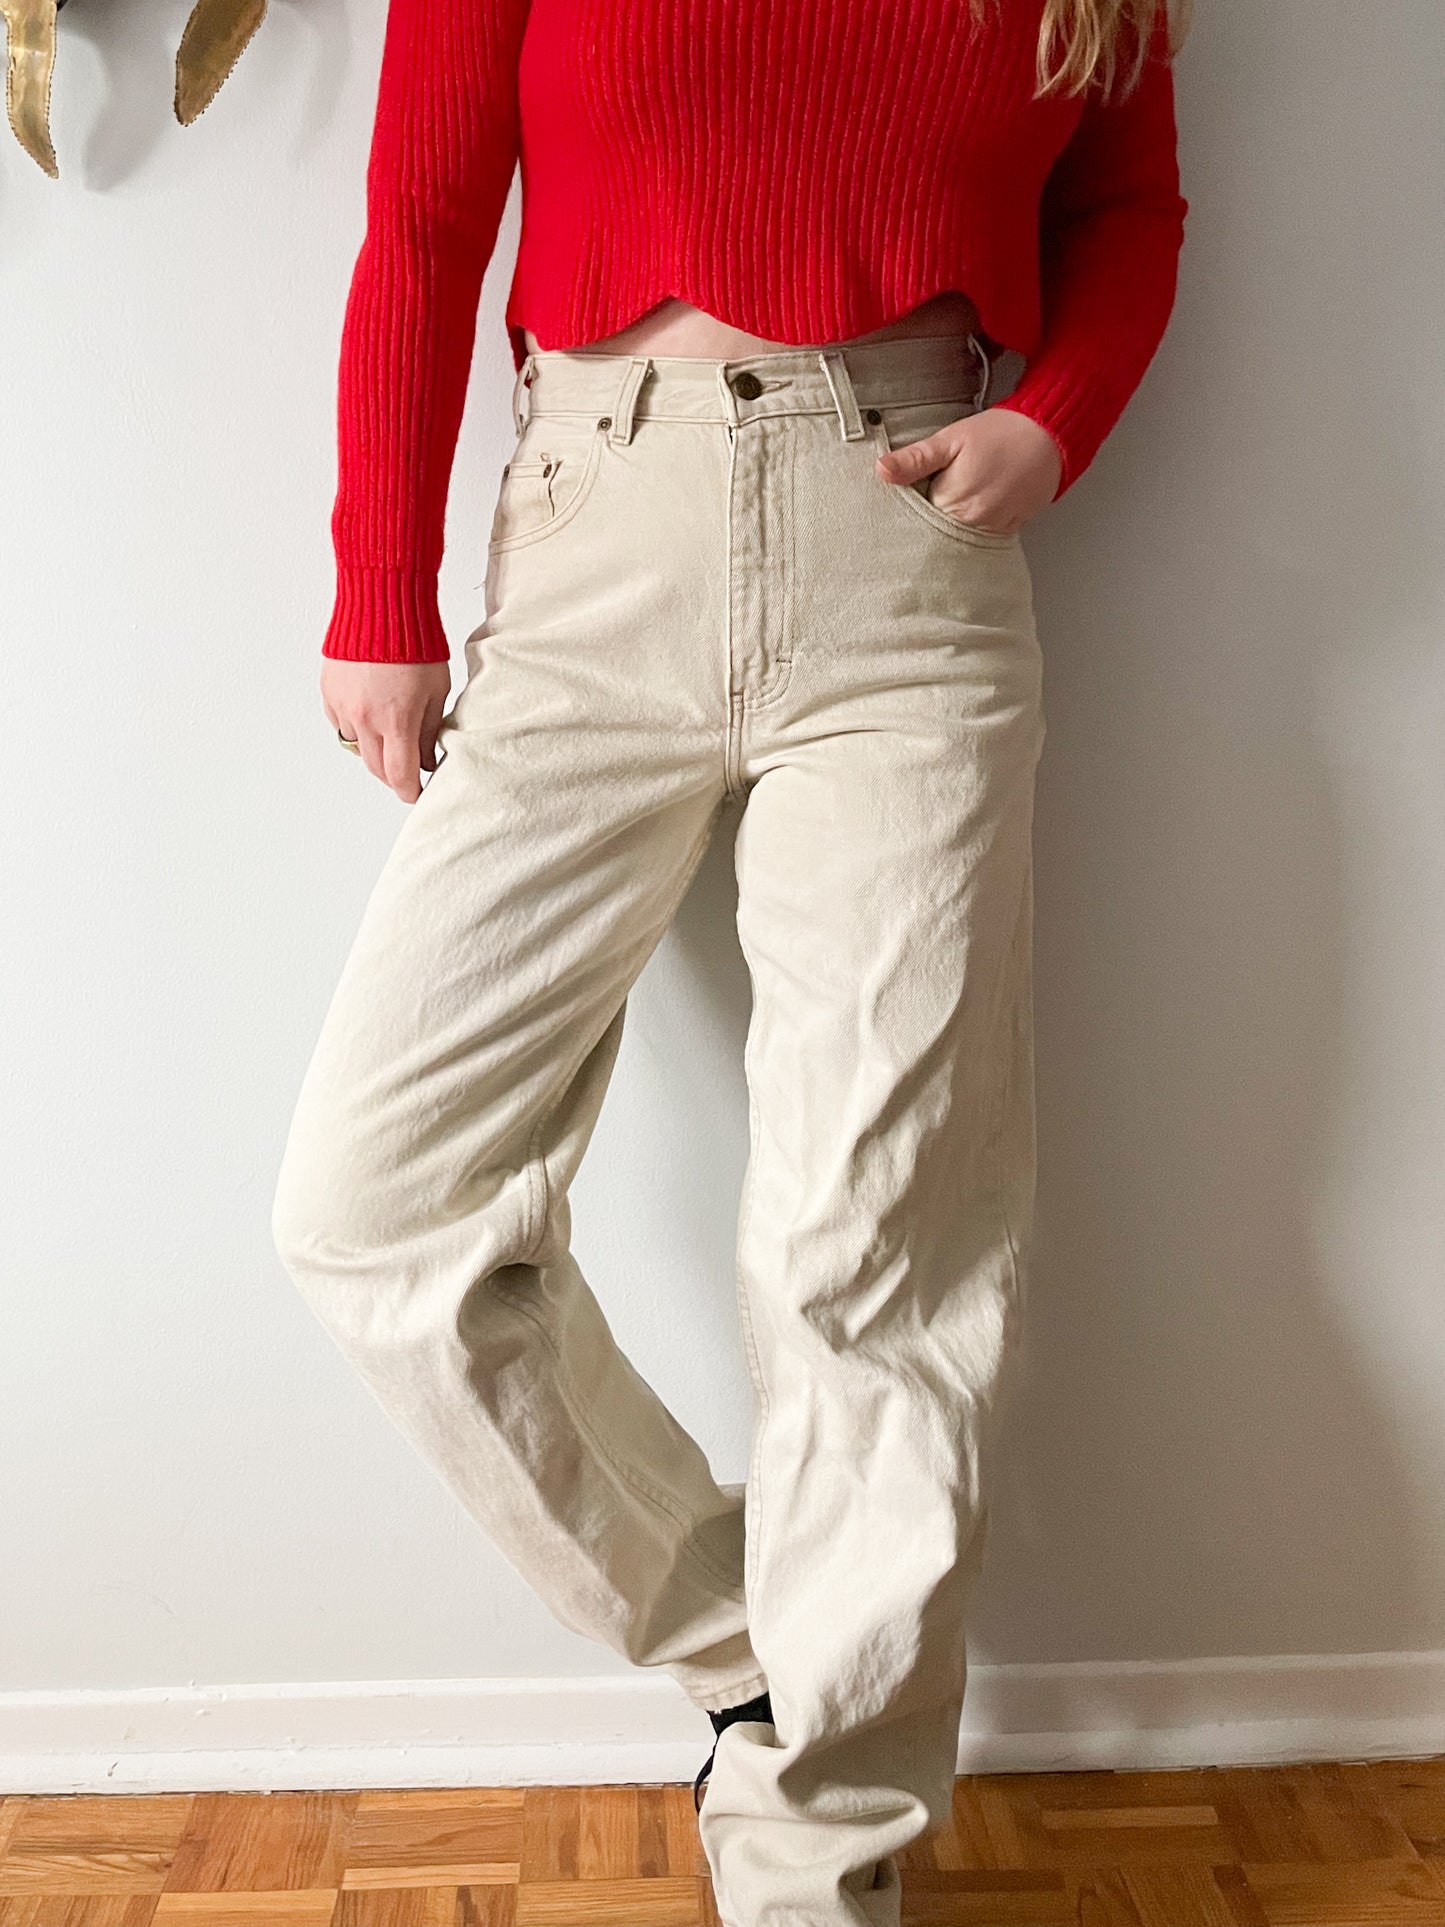 Eddie Bauer Beige 100% Cotton High Rise Wide Leg Jeans - Size 30 x 32